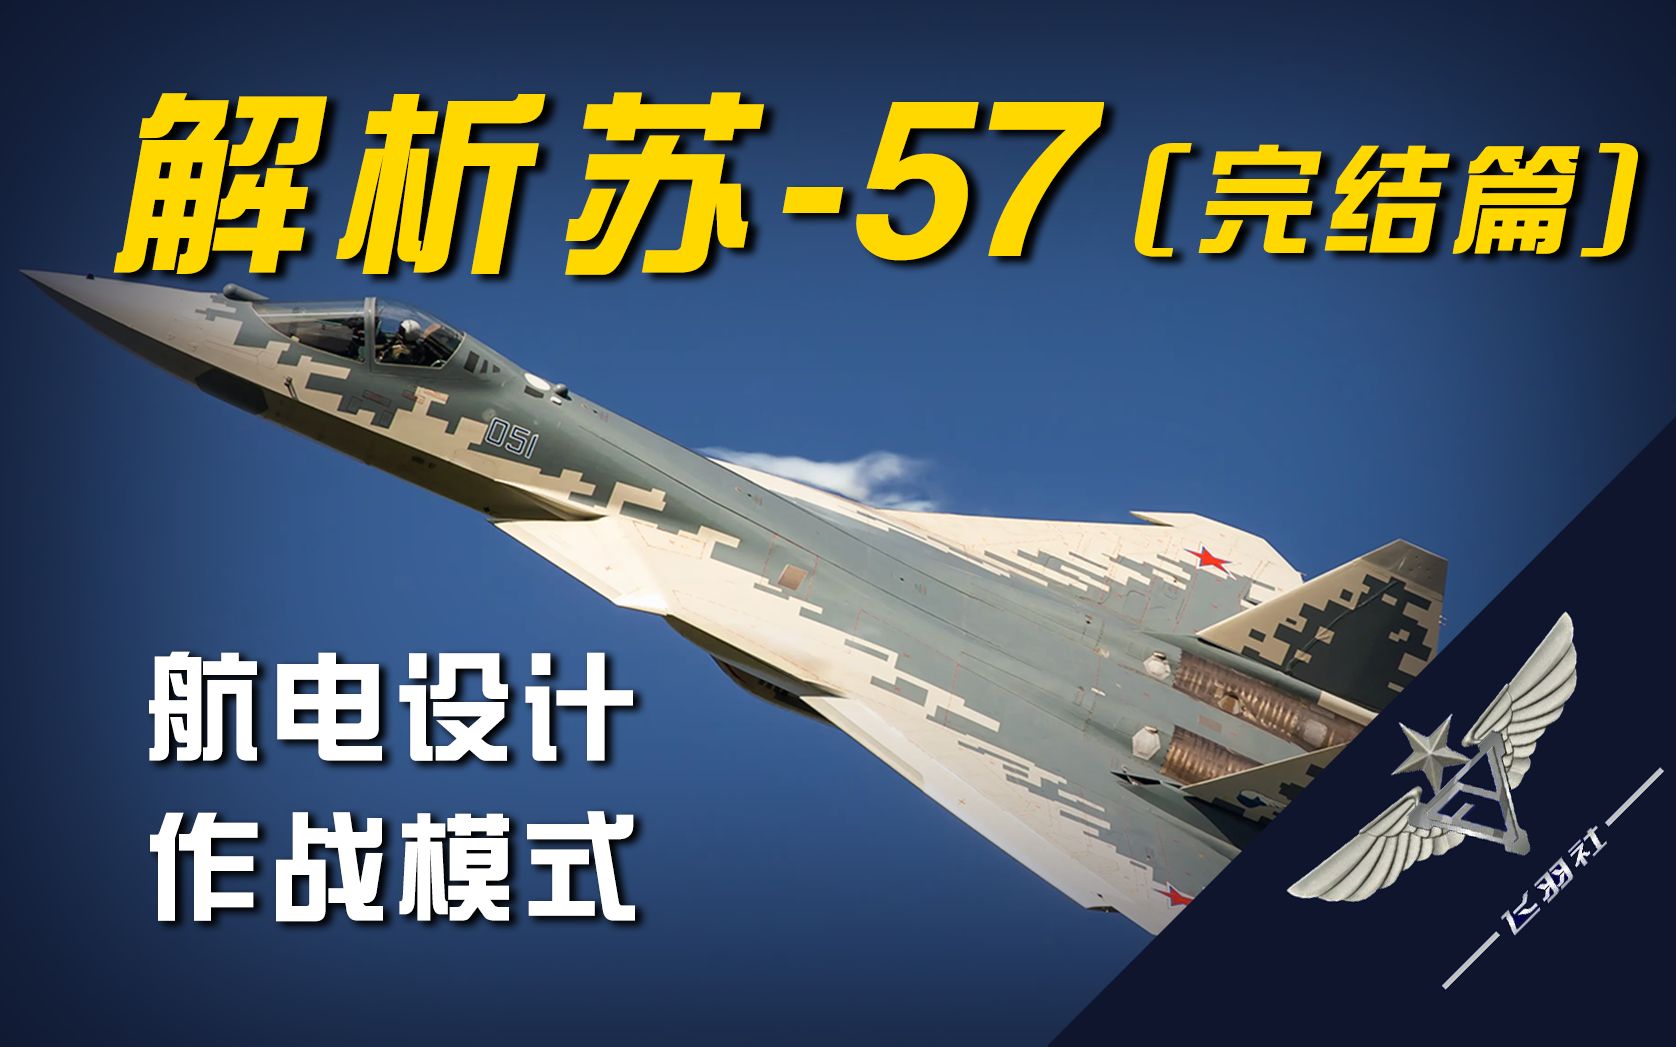 【愁云惨淡万里凝】苏-57航电设计分析与作战模式猜想